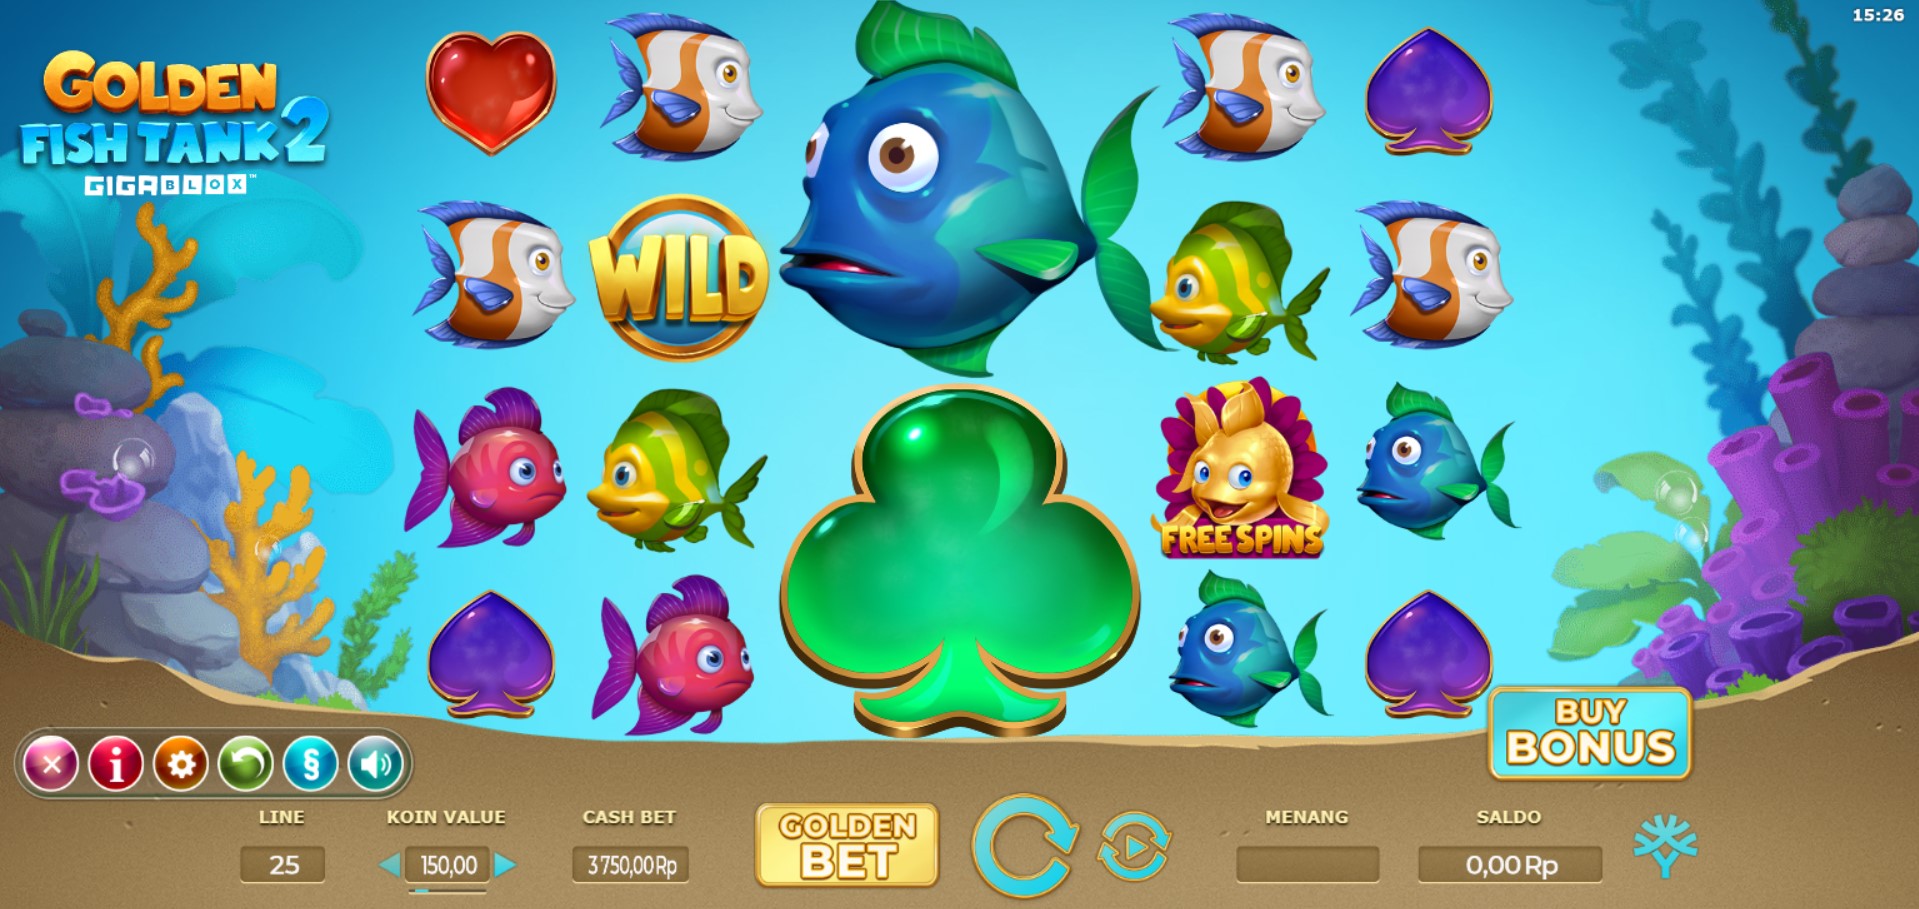 Panduan Lengkap Cara Bermain “Golden Fish Tank 2 Gigablox” dari Yggdrasil Gaming